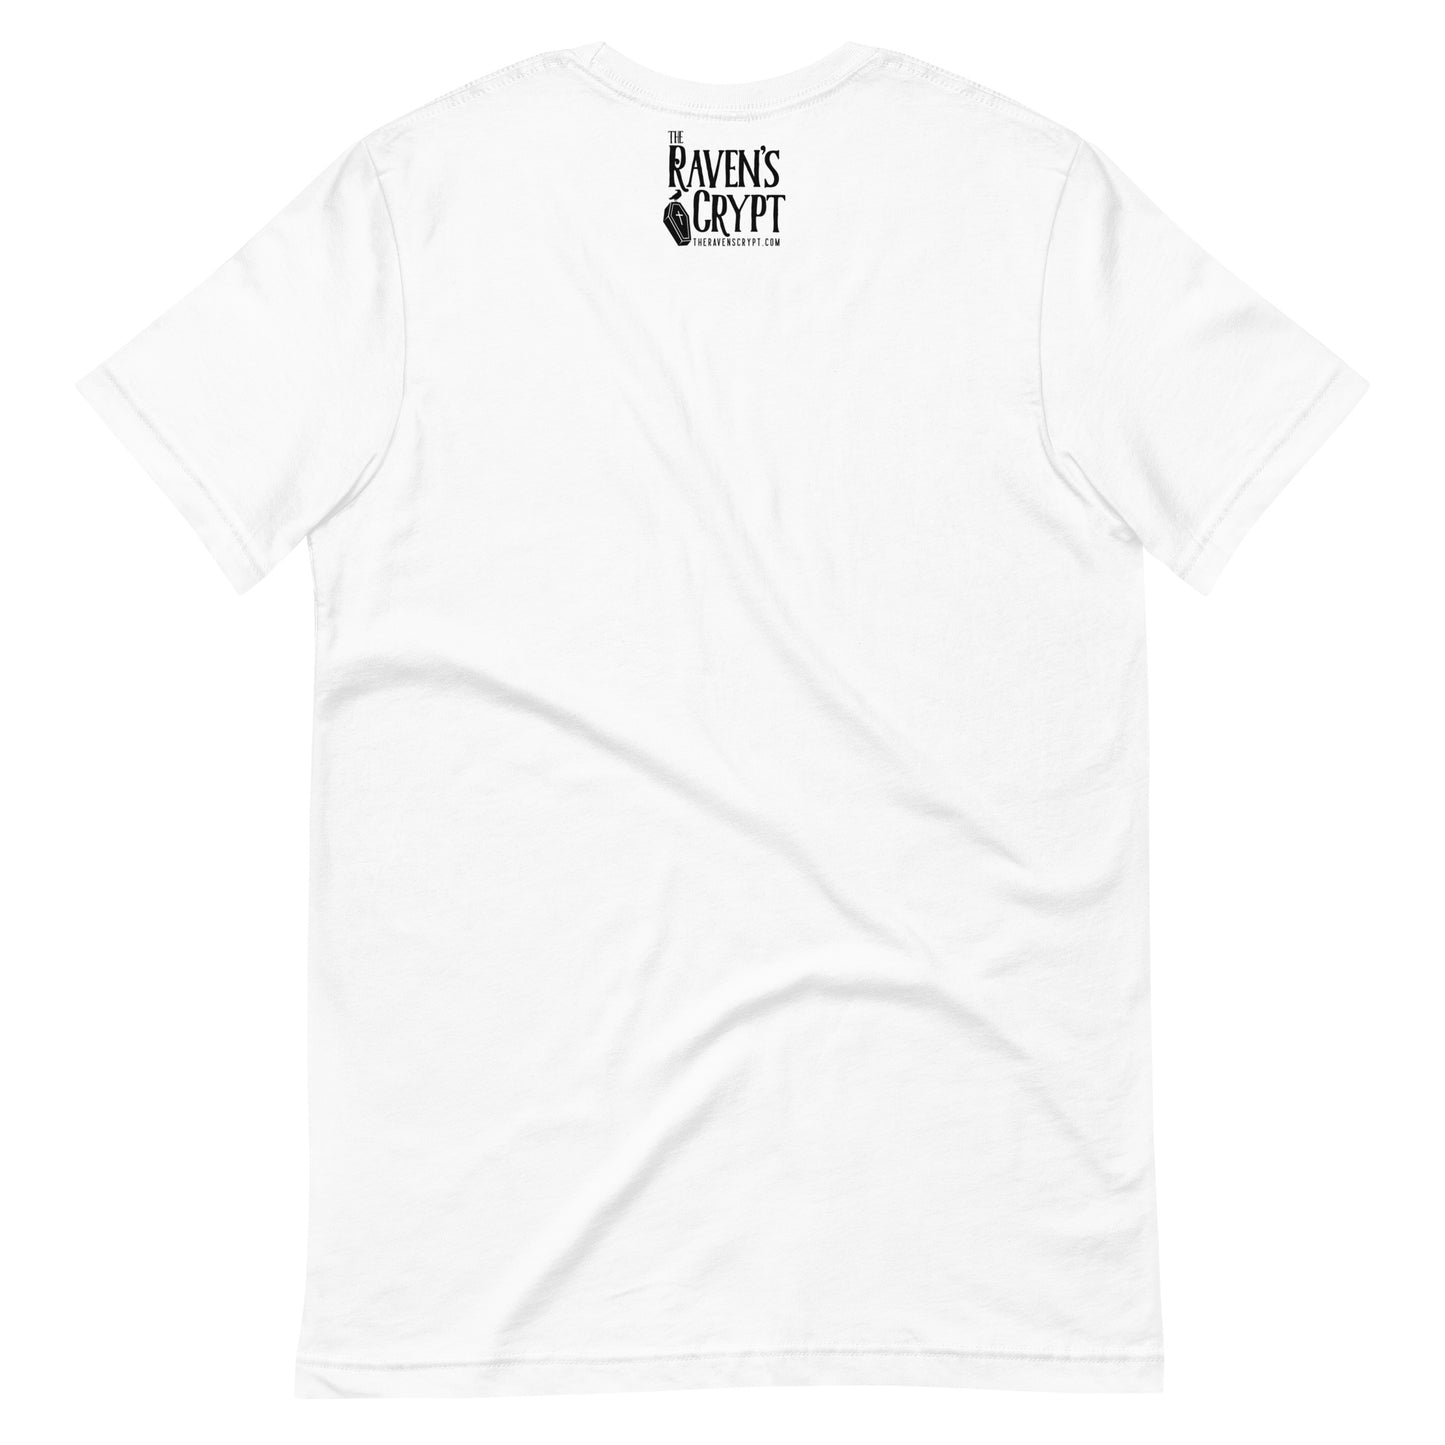 Women's Edgar Allan Poe "Nevermo" t-shirt - White Back